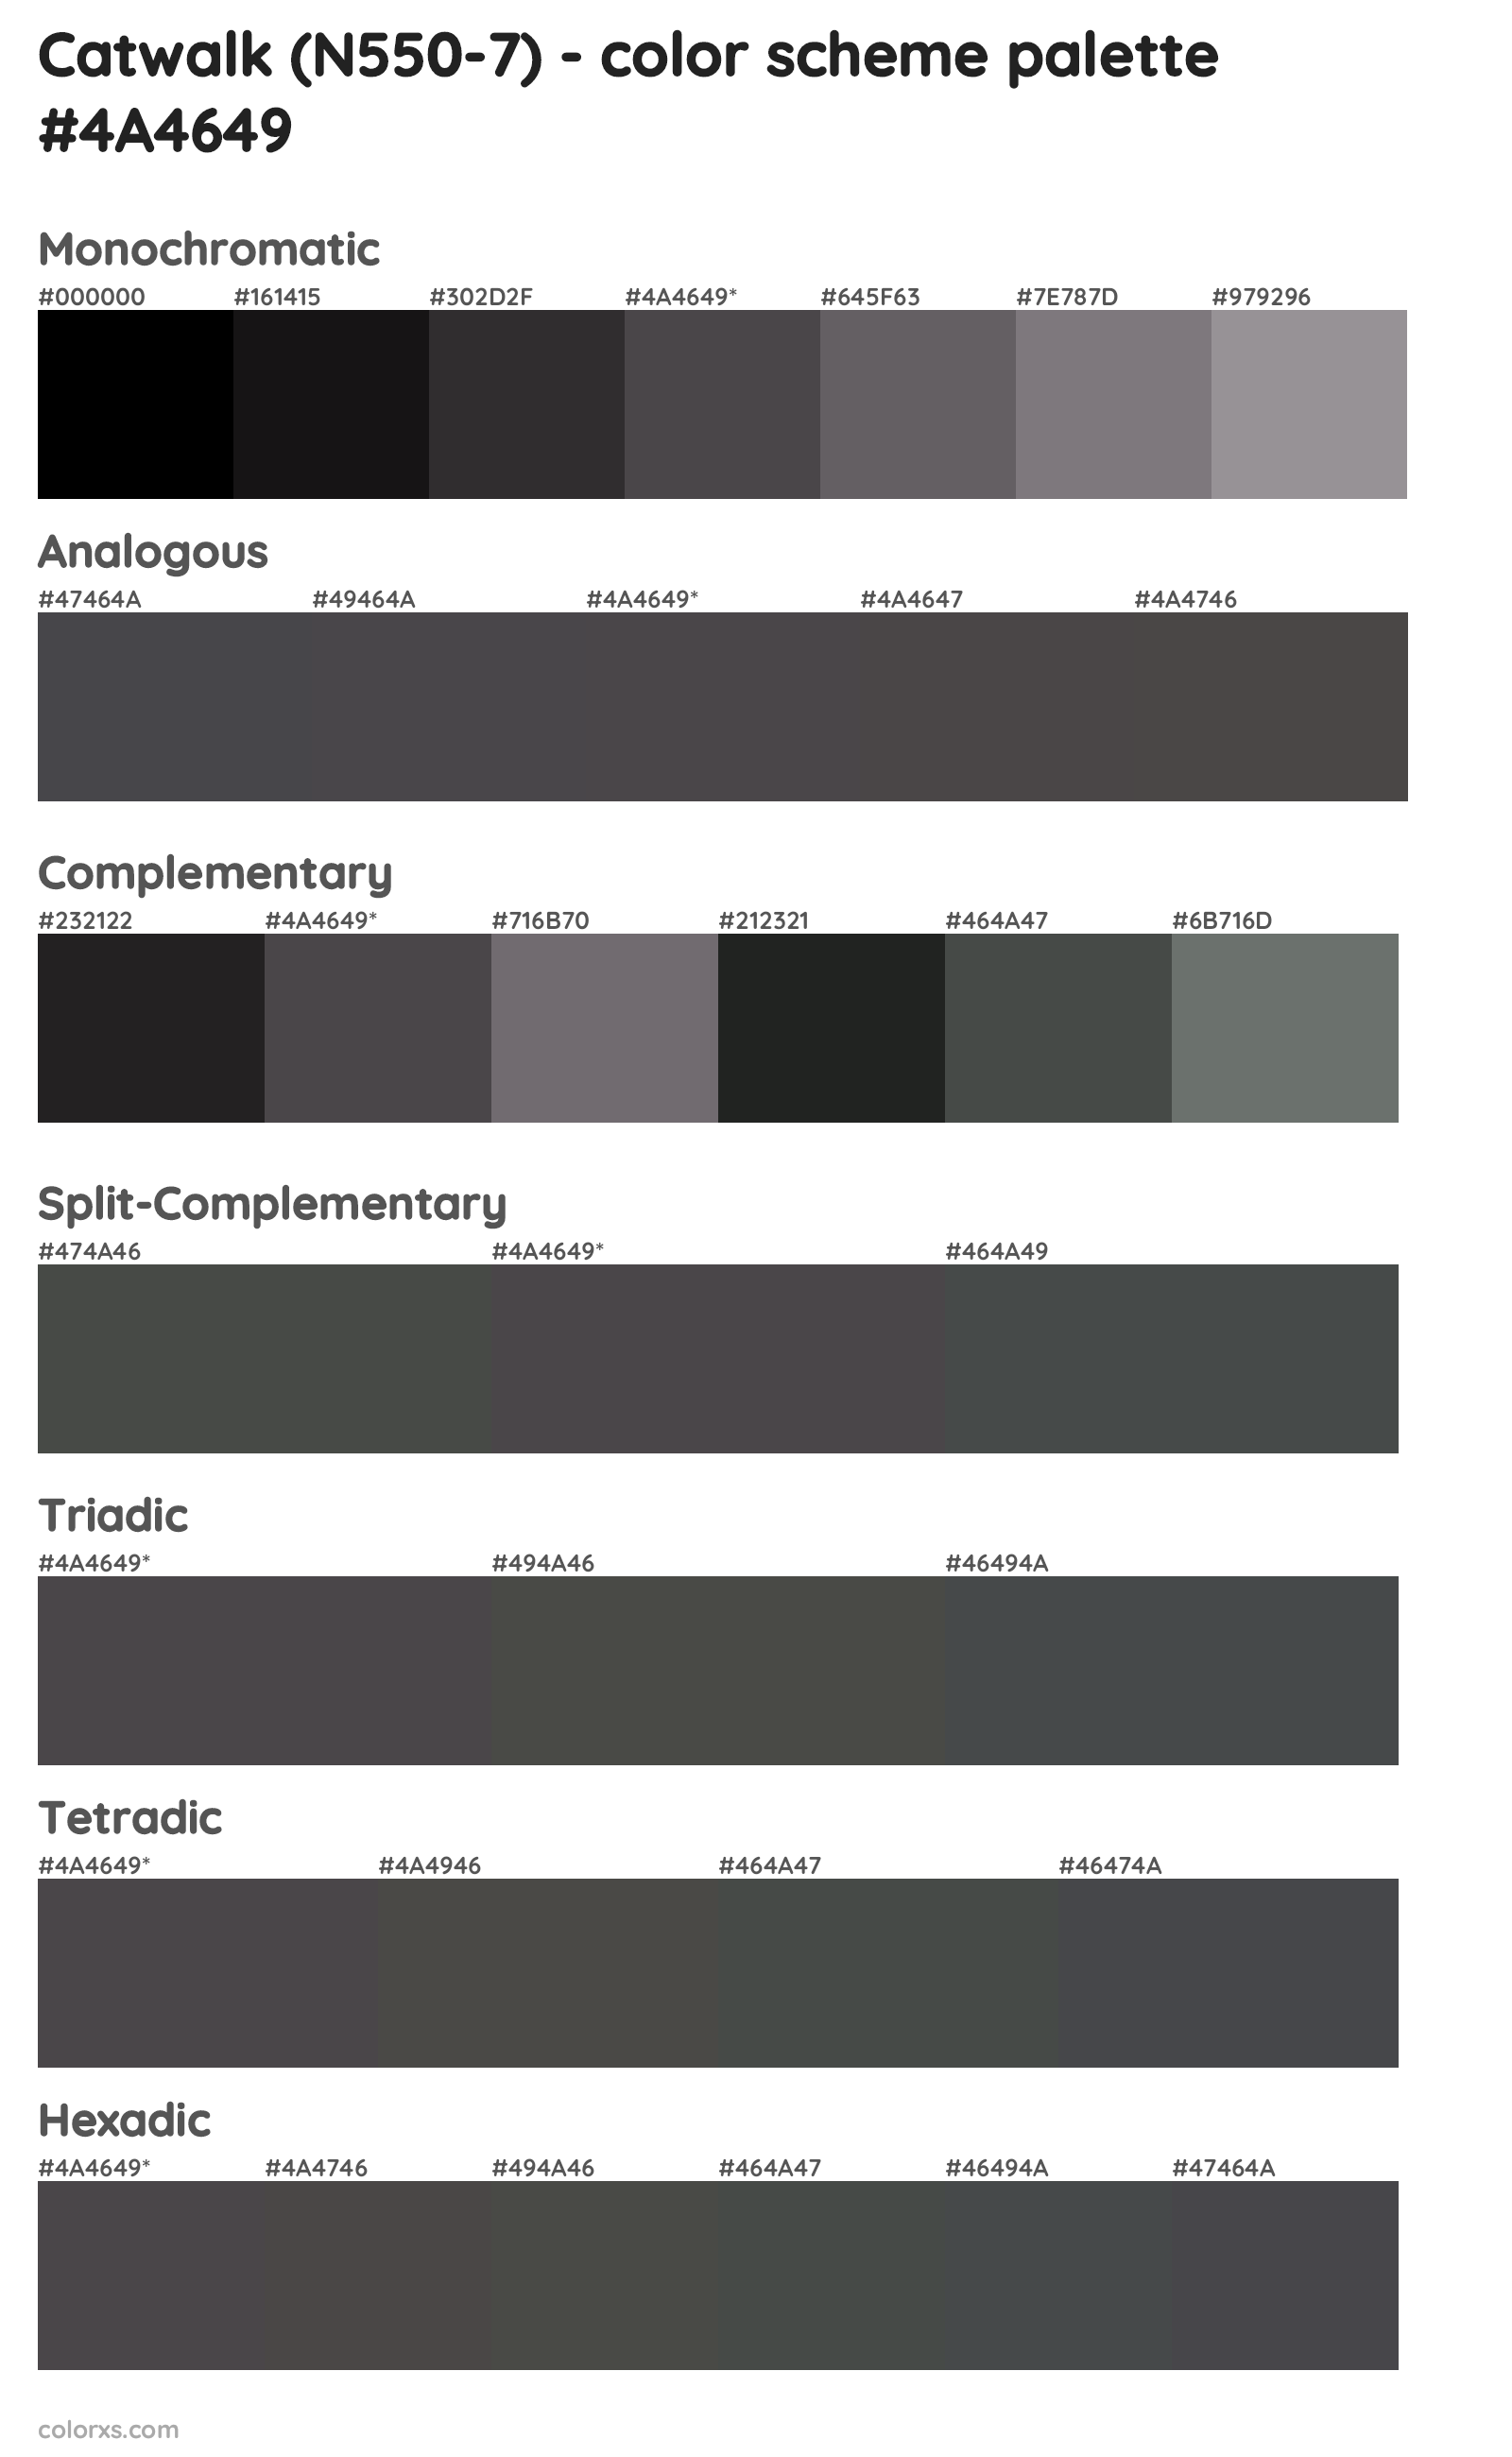 Catwalk (N550-7) Color Scheme Palettes